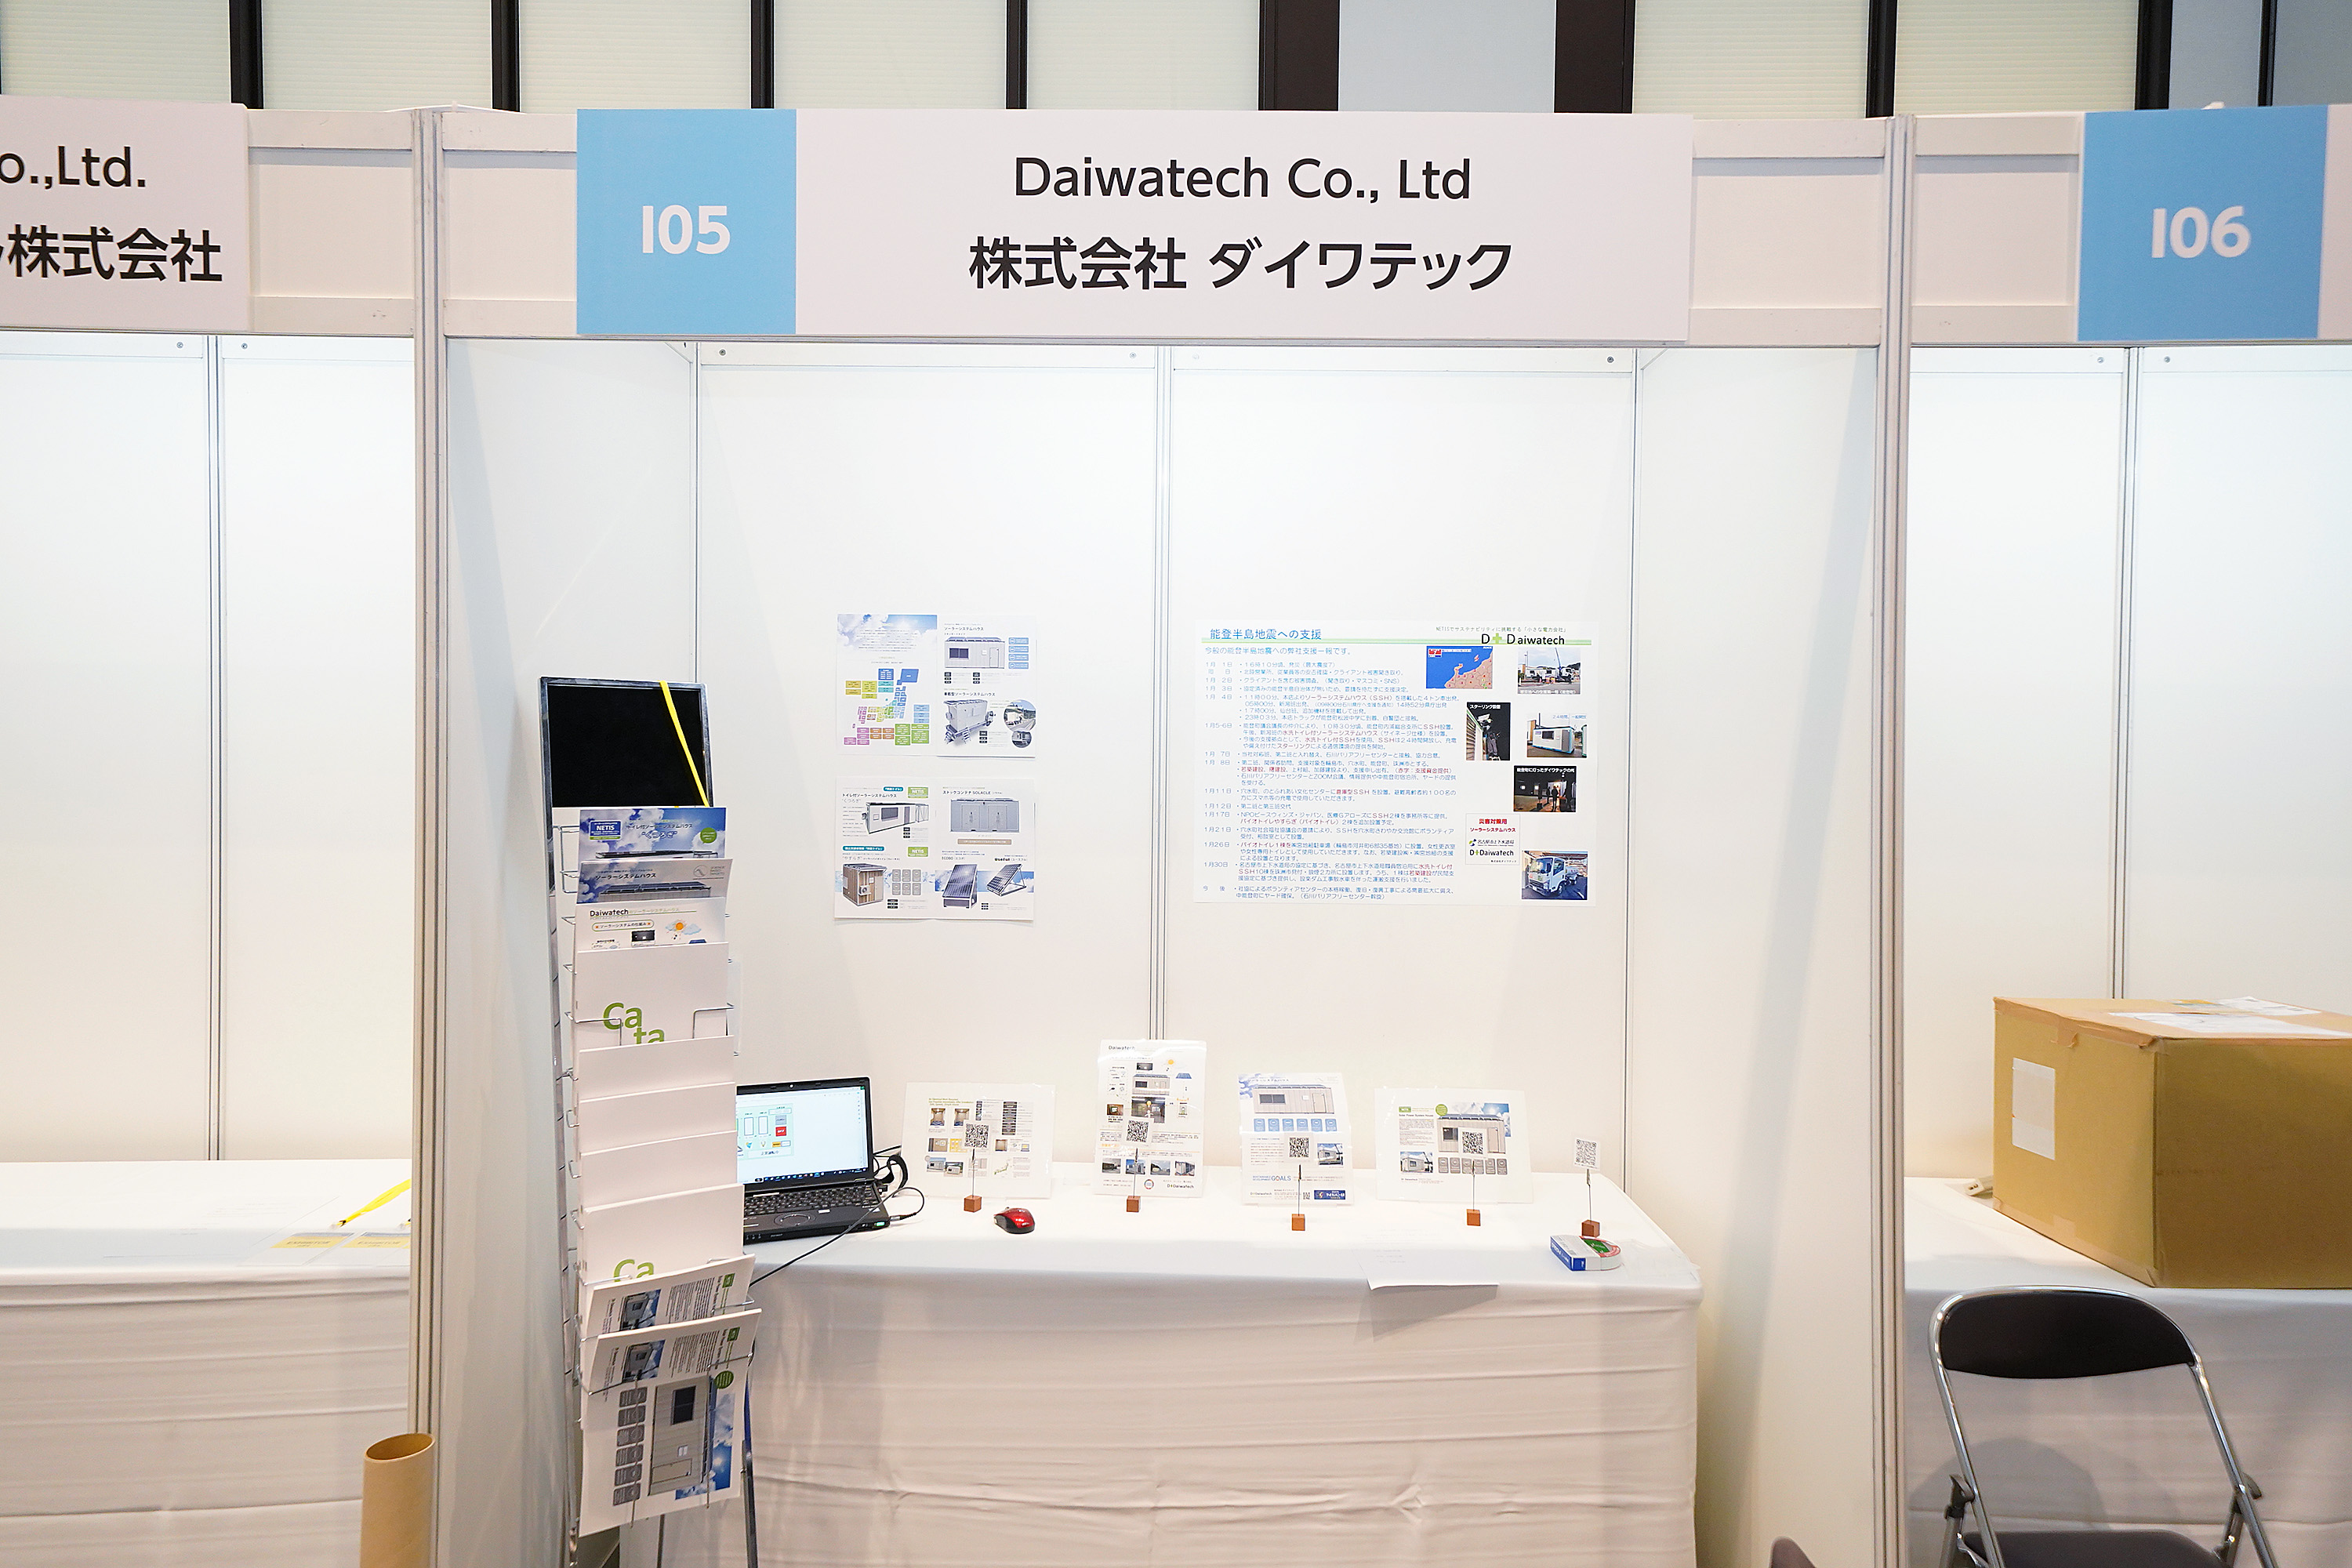 Daiwatech Co., Ltd